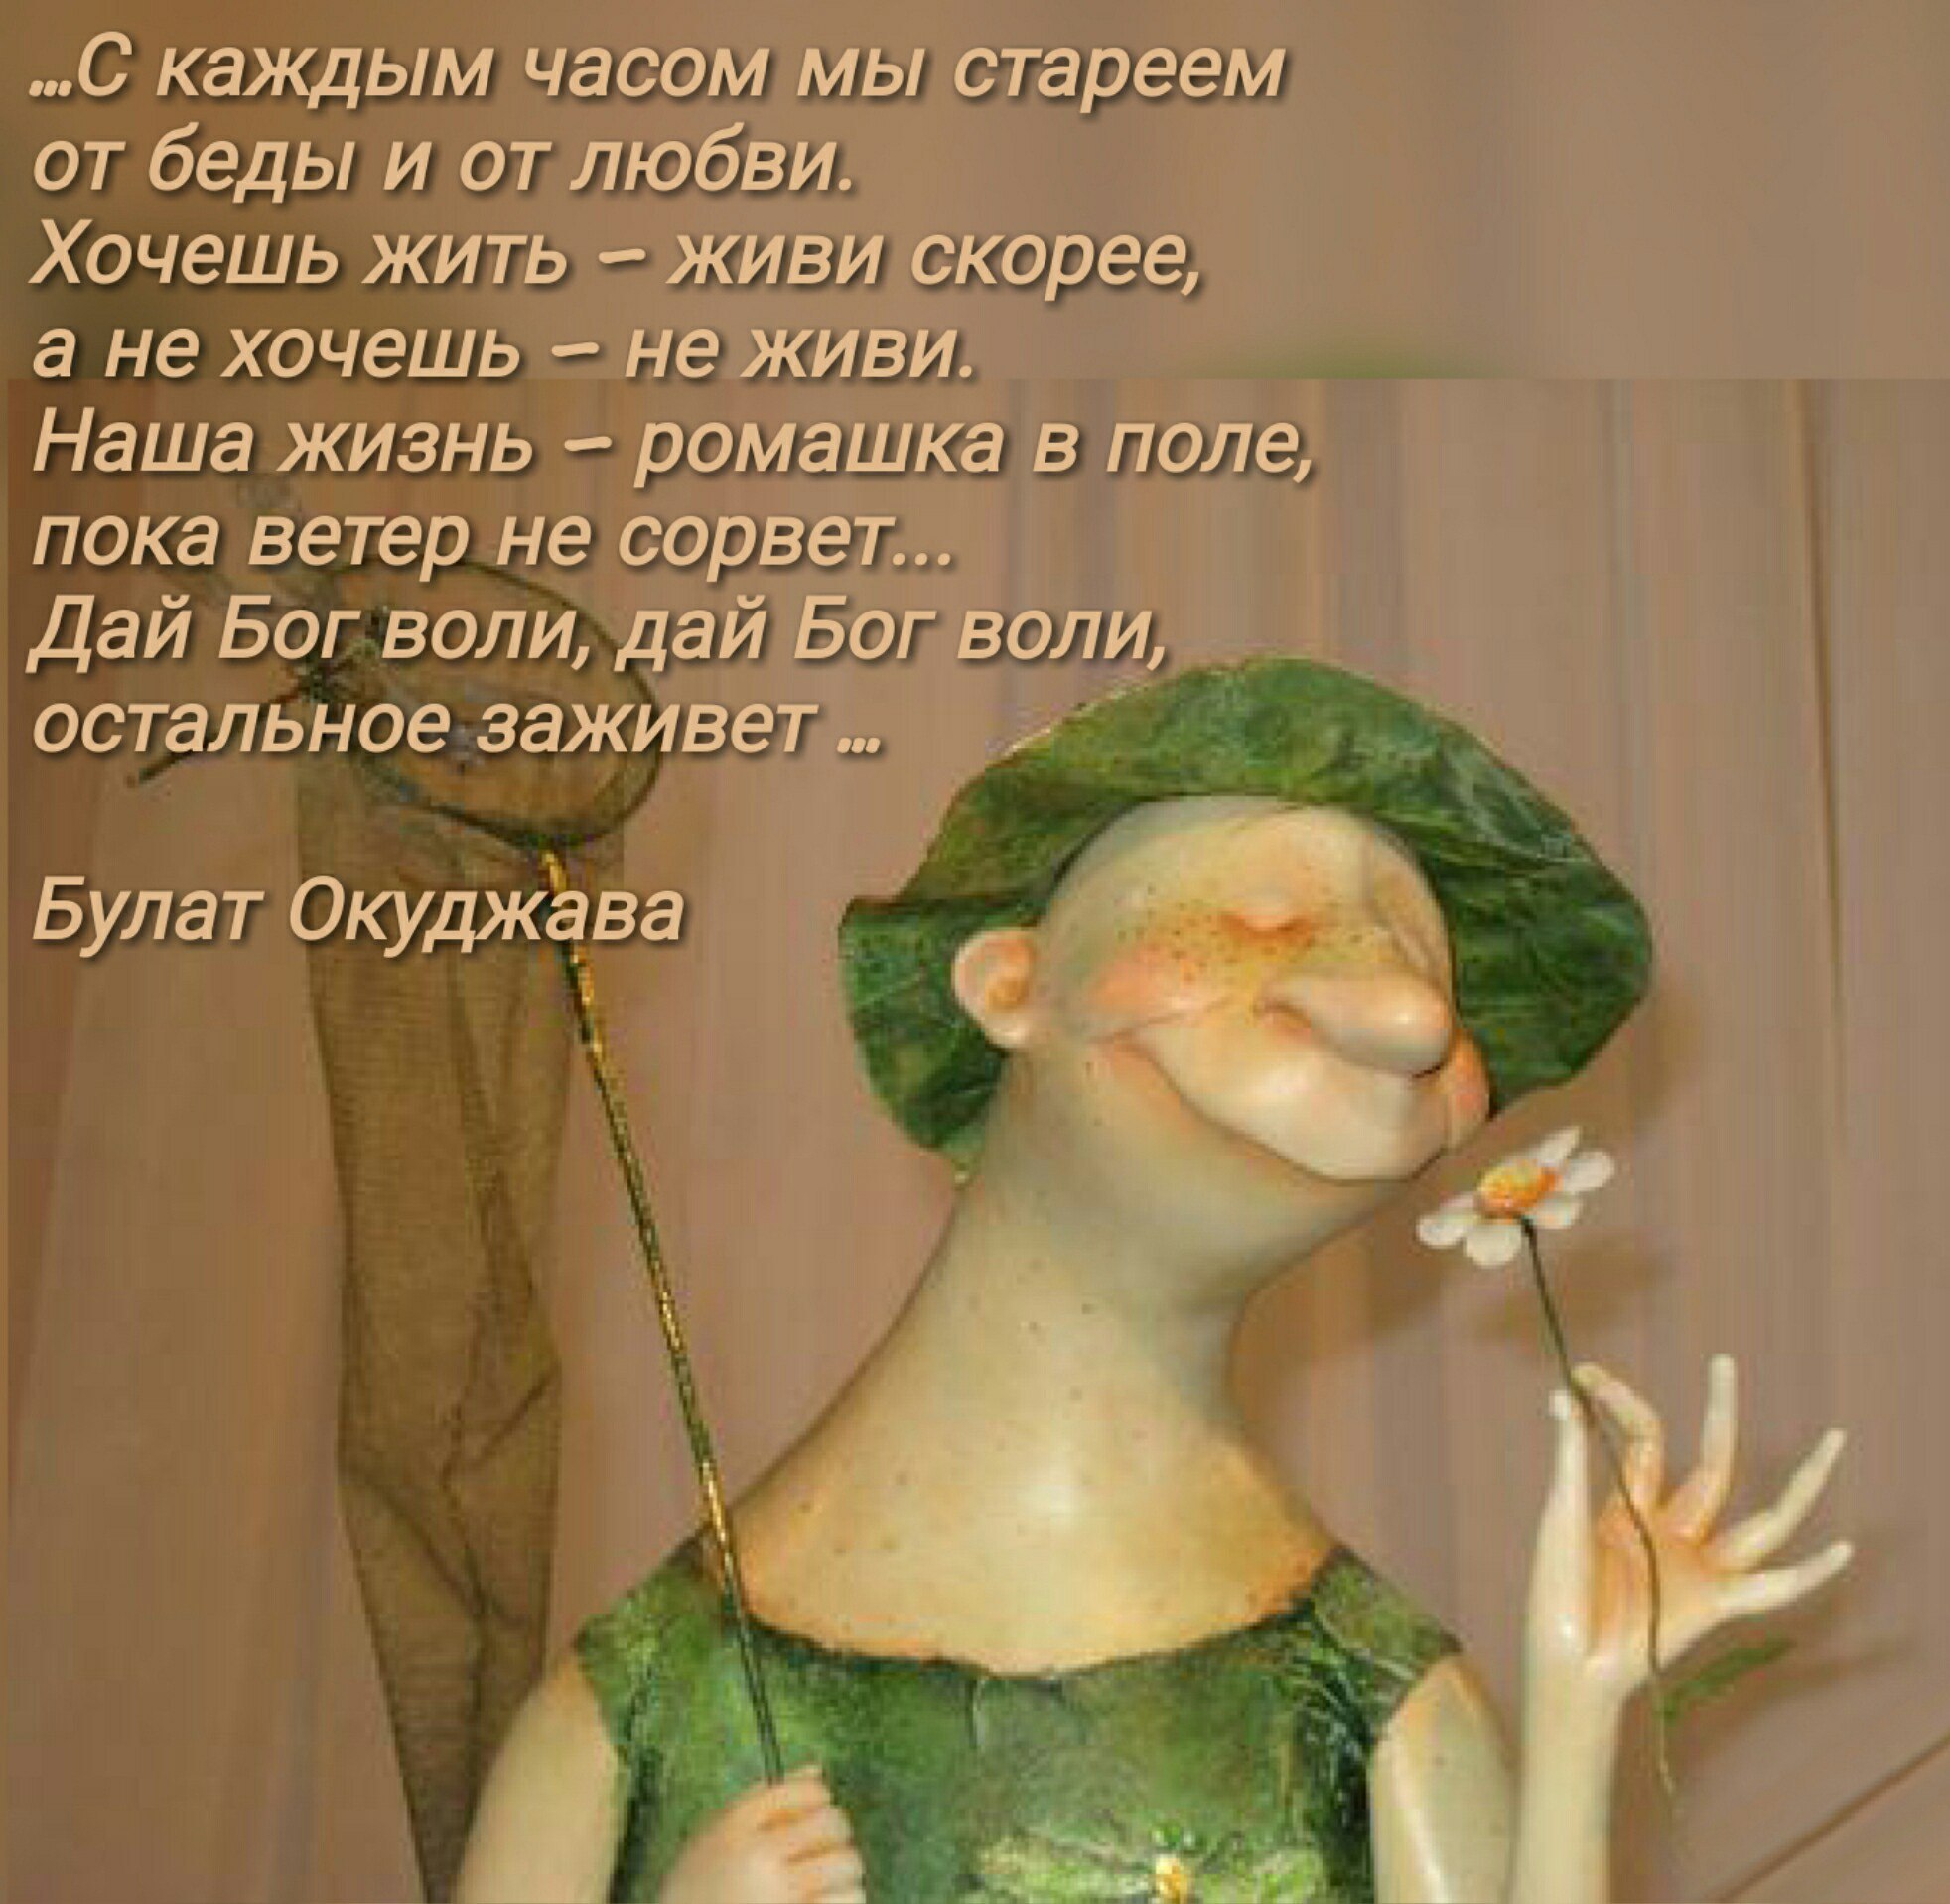 Куклы из глины художницы Ольги Егупец